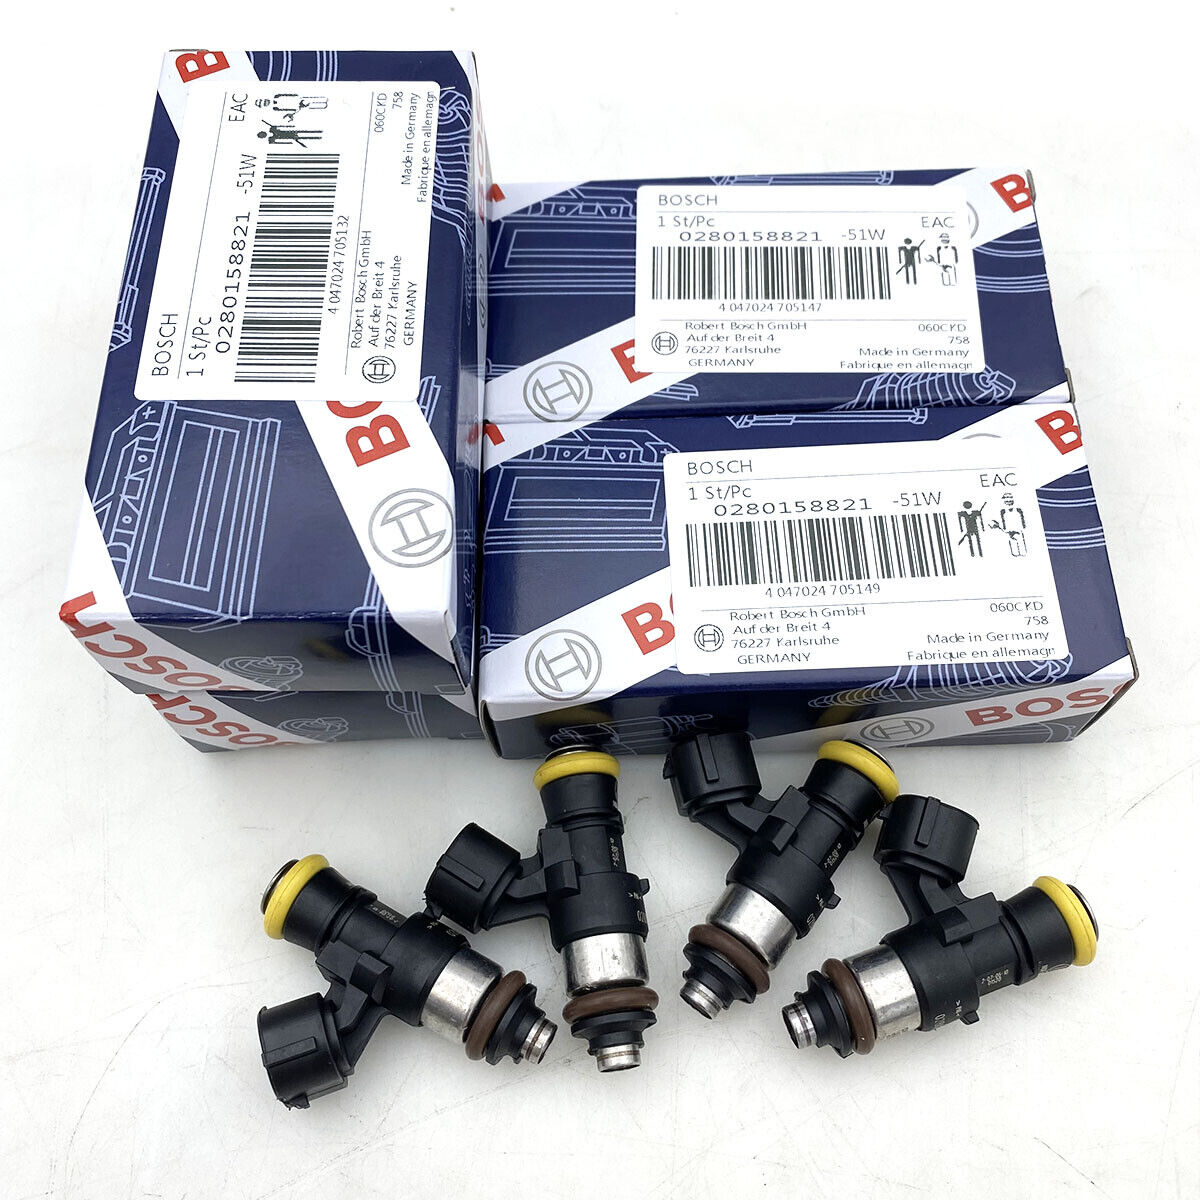 4PCS High Impedance Fuel Injectors 0280158821 Fits For Bosch 210lb 2200cc EV14